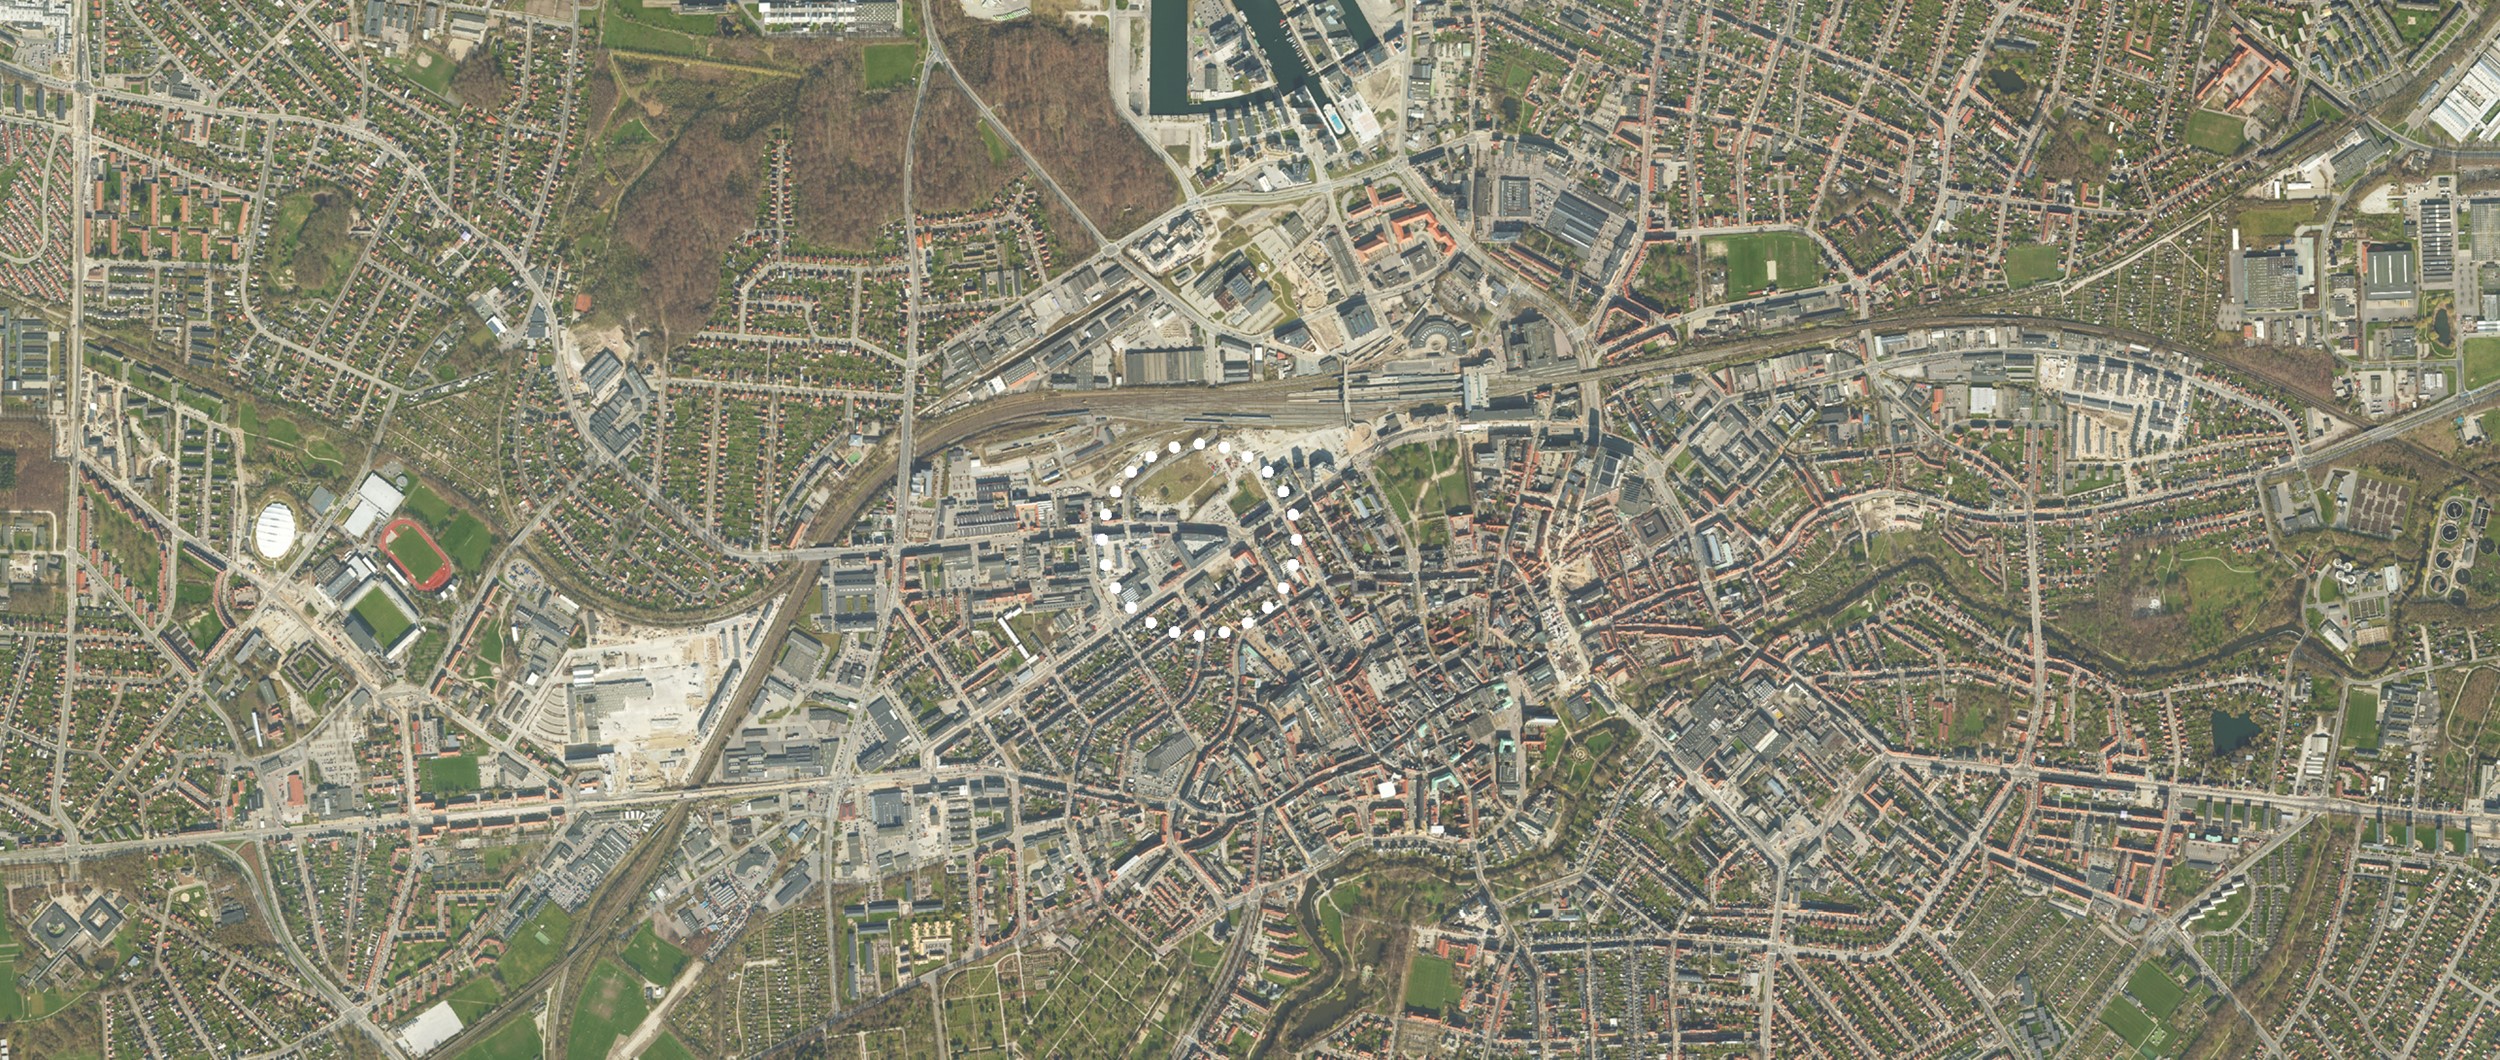 Danmarks tredjestørste by, Odense, har byudvikling i fokus. I flere af byens områder opføres projektbyggerier af både større og mindre karakter.